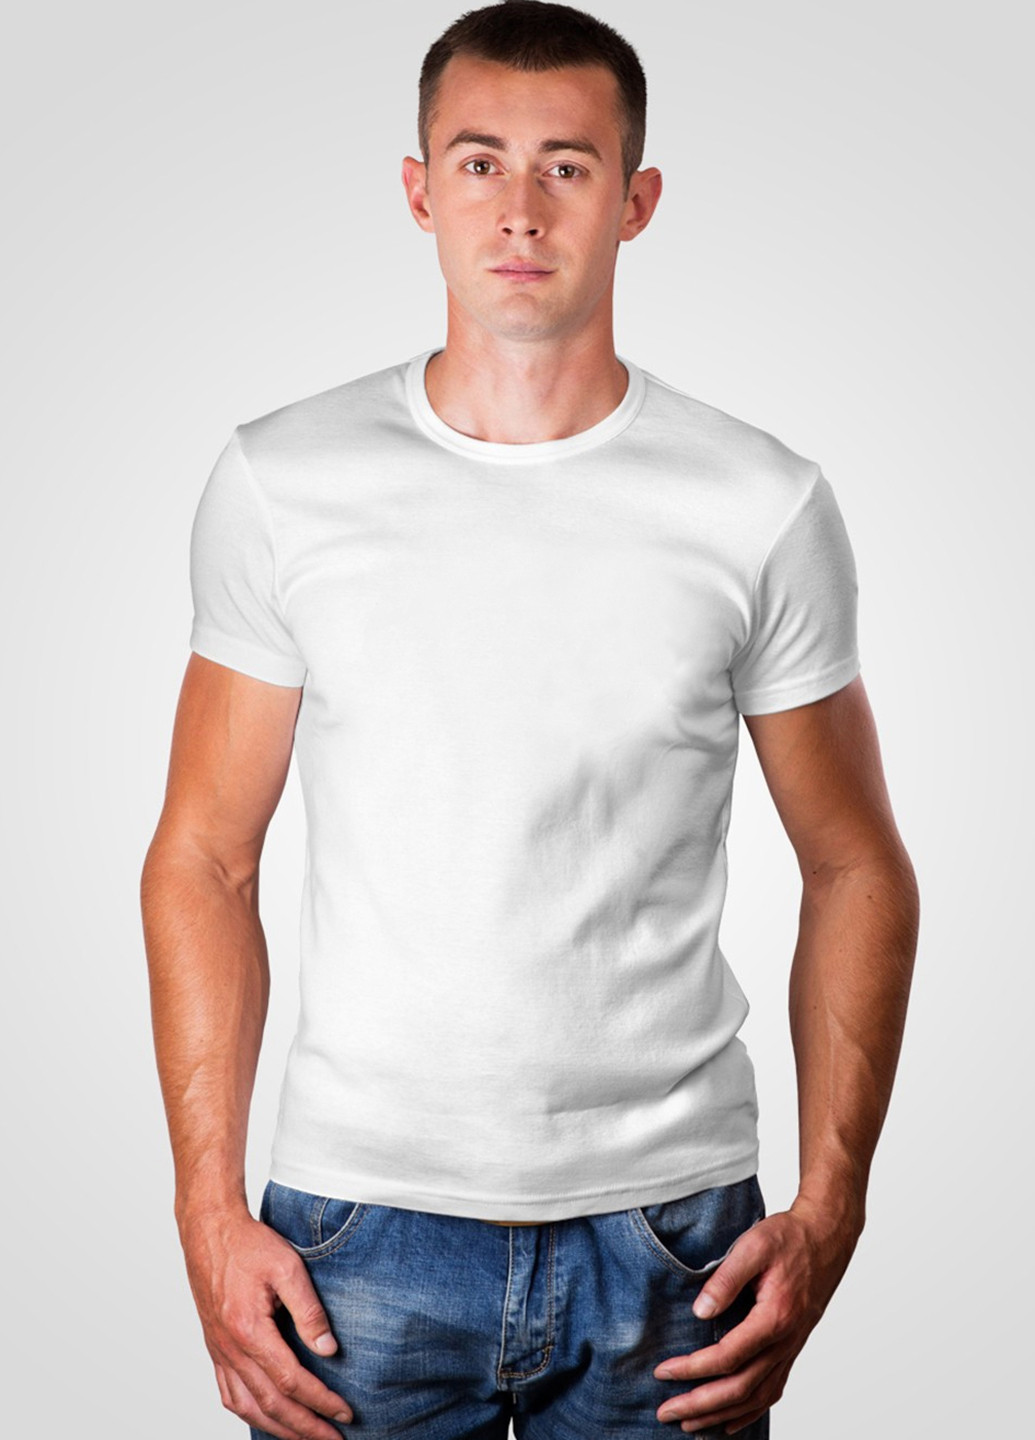 Біла футболка чоловіча 19м319-17 синя(електро) з коротким рукавом Malta